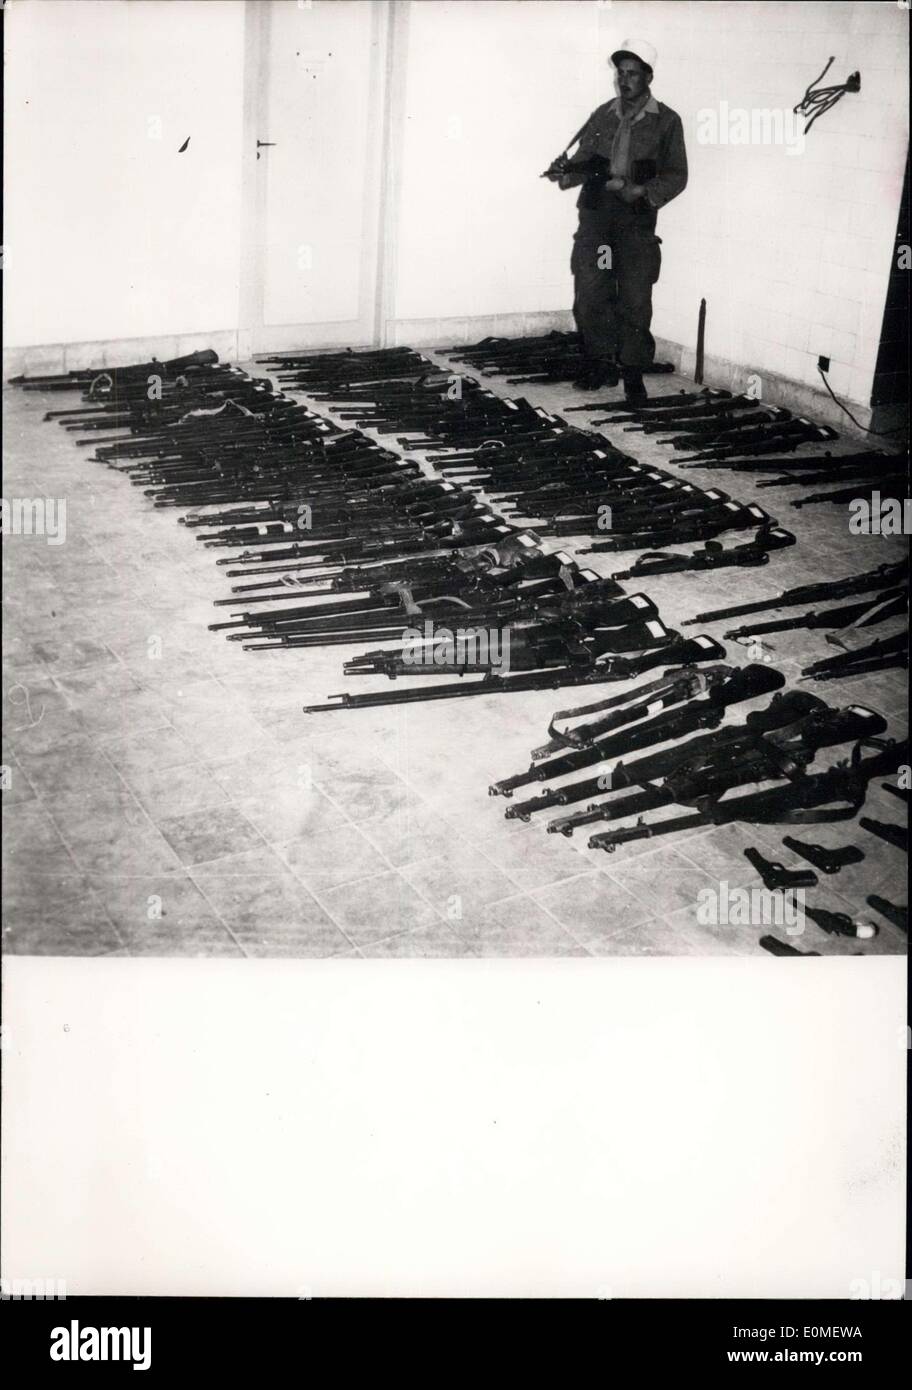 Dicembre 08, 1954 - ribelli algerini rinunciare alle armi da guerra alcuni dei fucili a canna rigata dato da Fellaghas (ribelli algerini) come hanno smesso di combattere in Gafsa area. Foto Stock